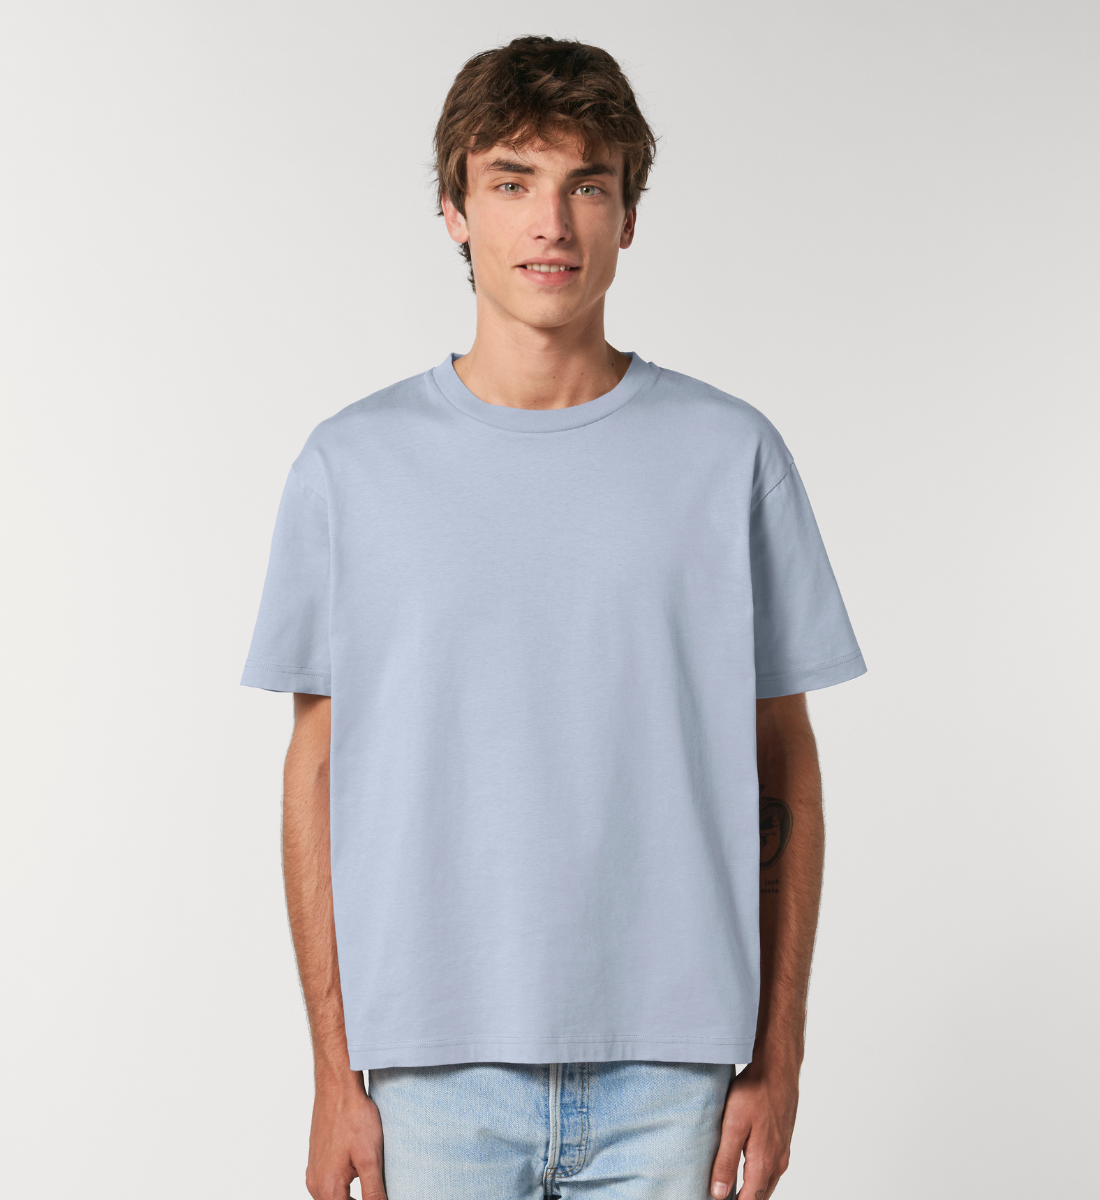 chakren l shirt aus bio-baumwolle blau l yoga fashion l vegane mode l nachhaltige mode online shoppen